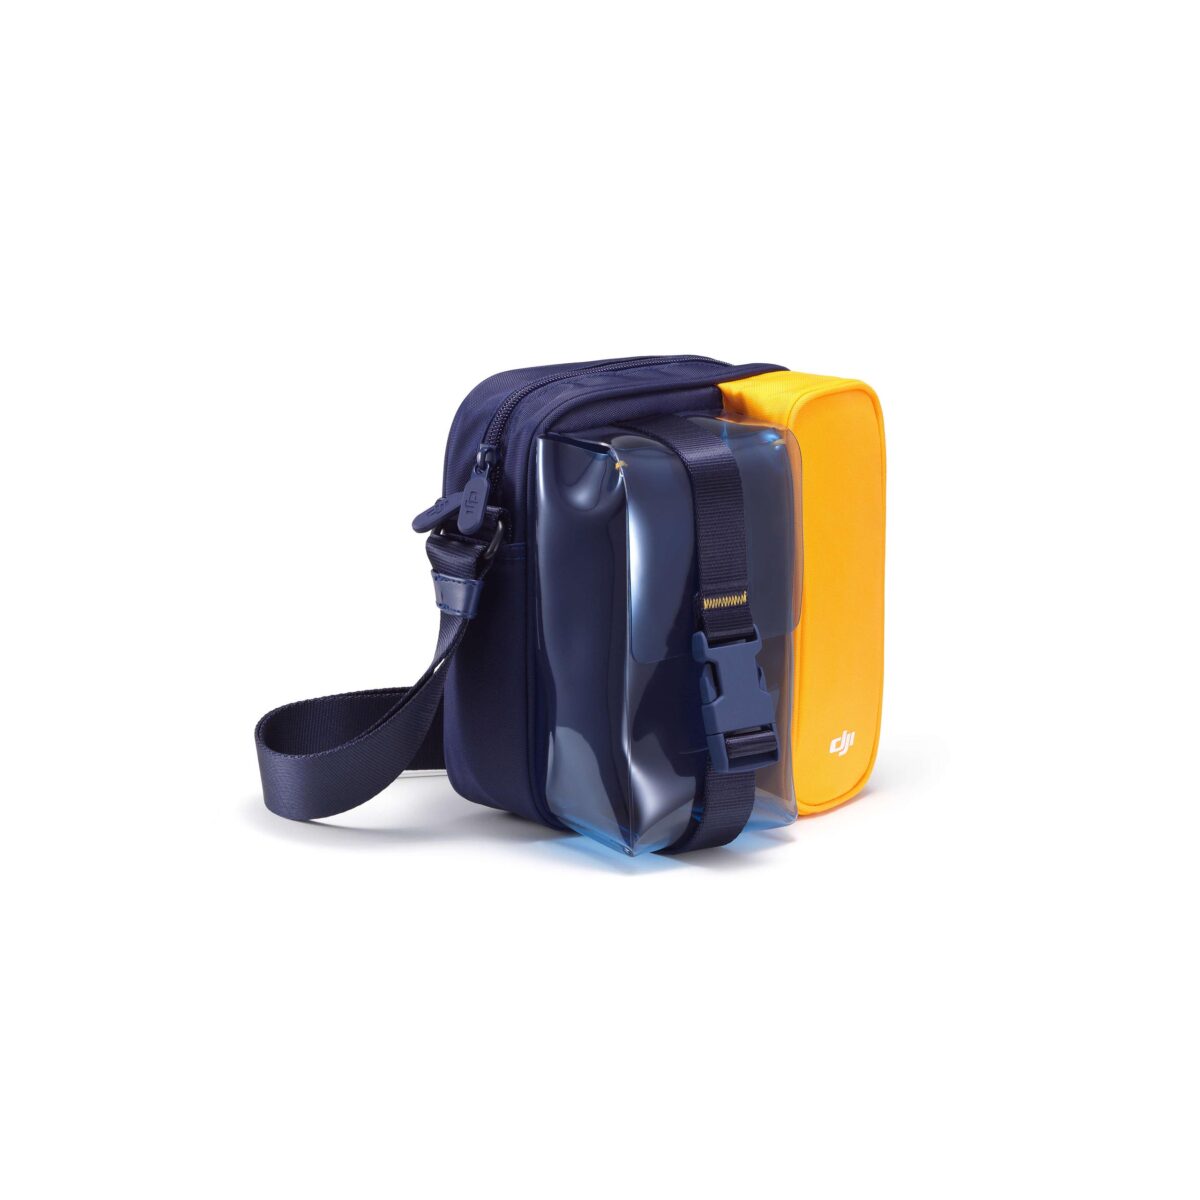 Купить Компактная сумка DJI (Сине-желтая) для Mini / Mini 2 в Таллинне